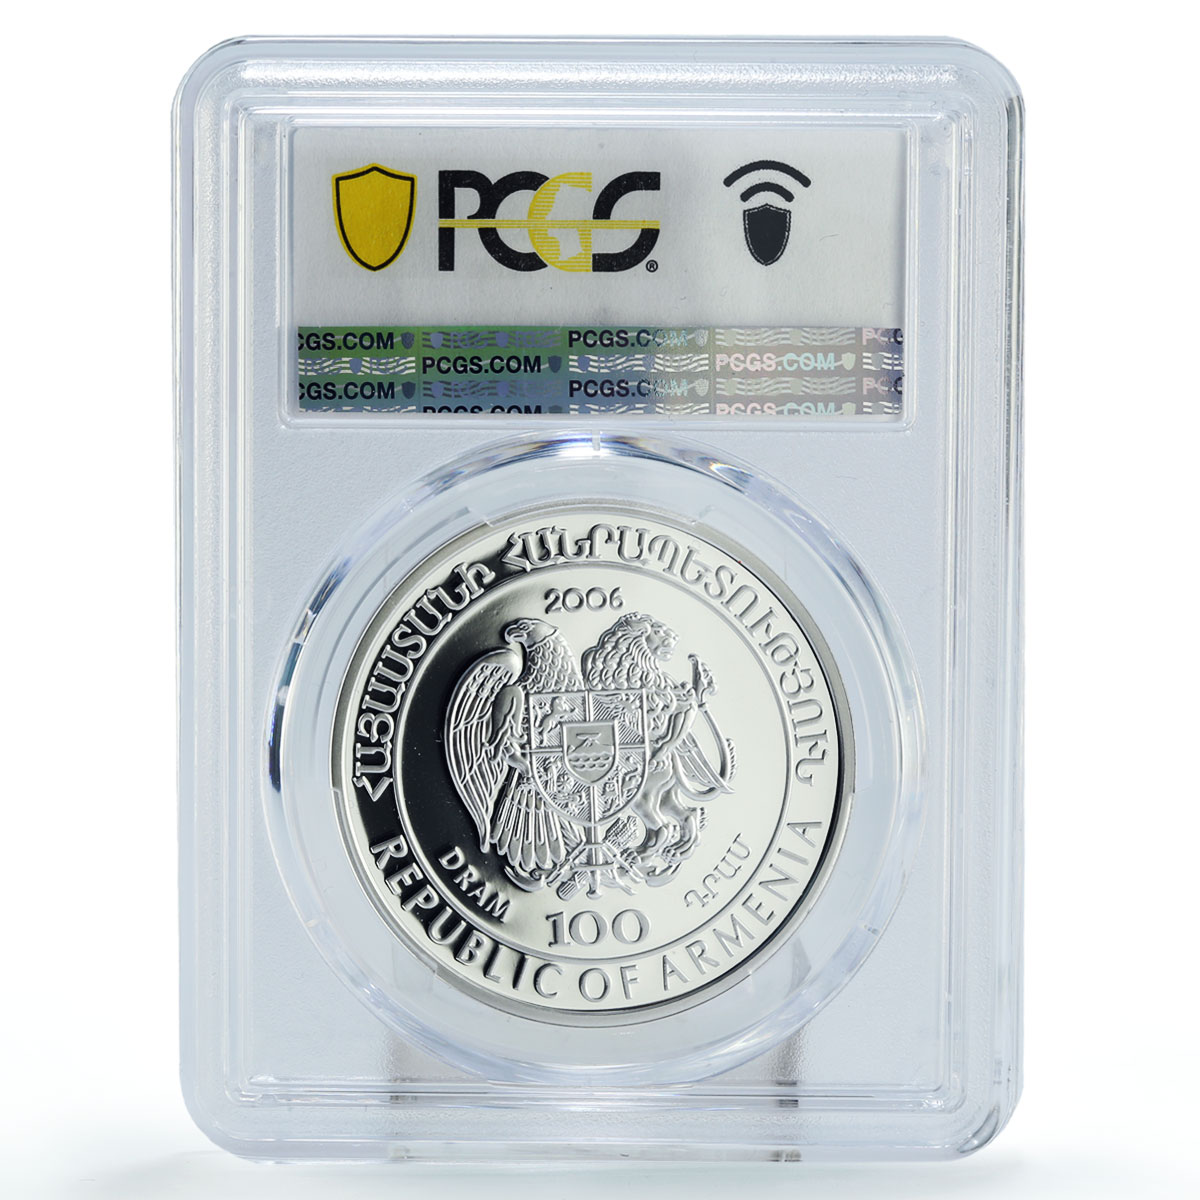 Armenia 100 dram Conservation Red Book Hedgehog Fauna PR70 PCGS silver coin 2006